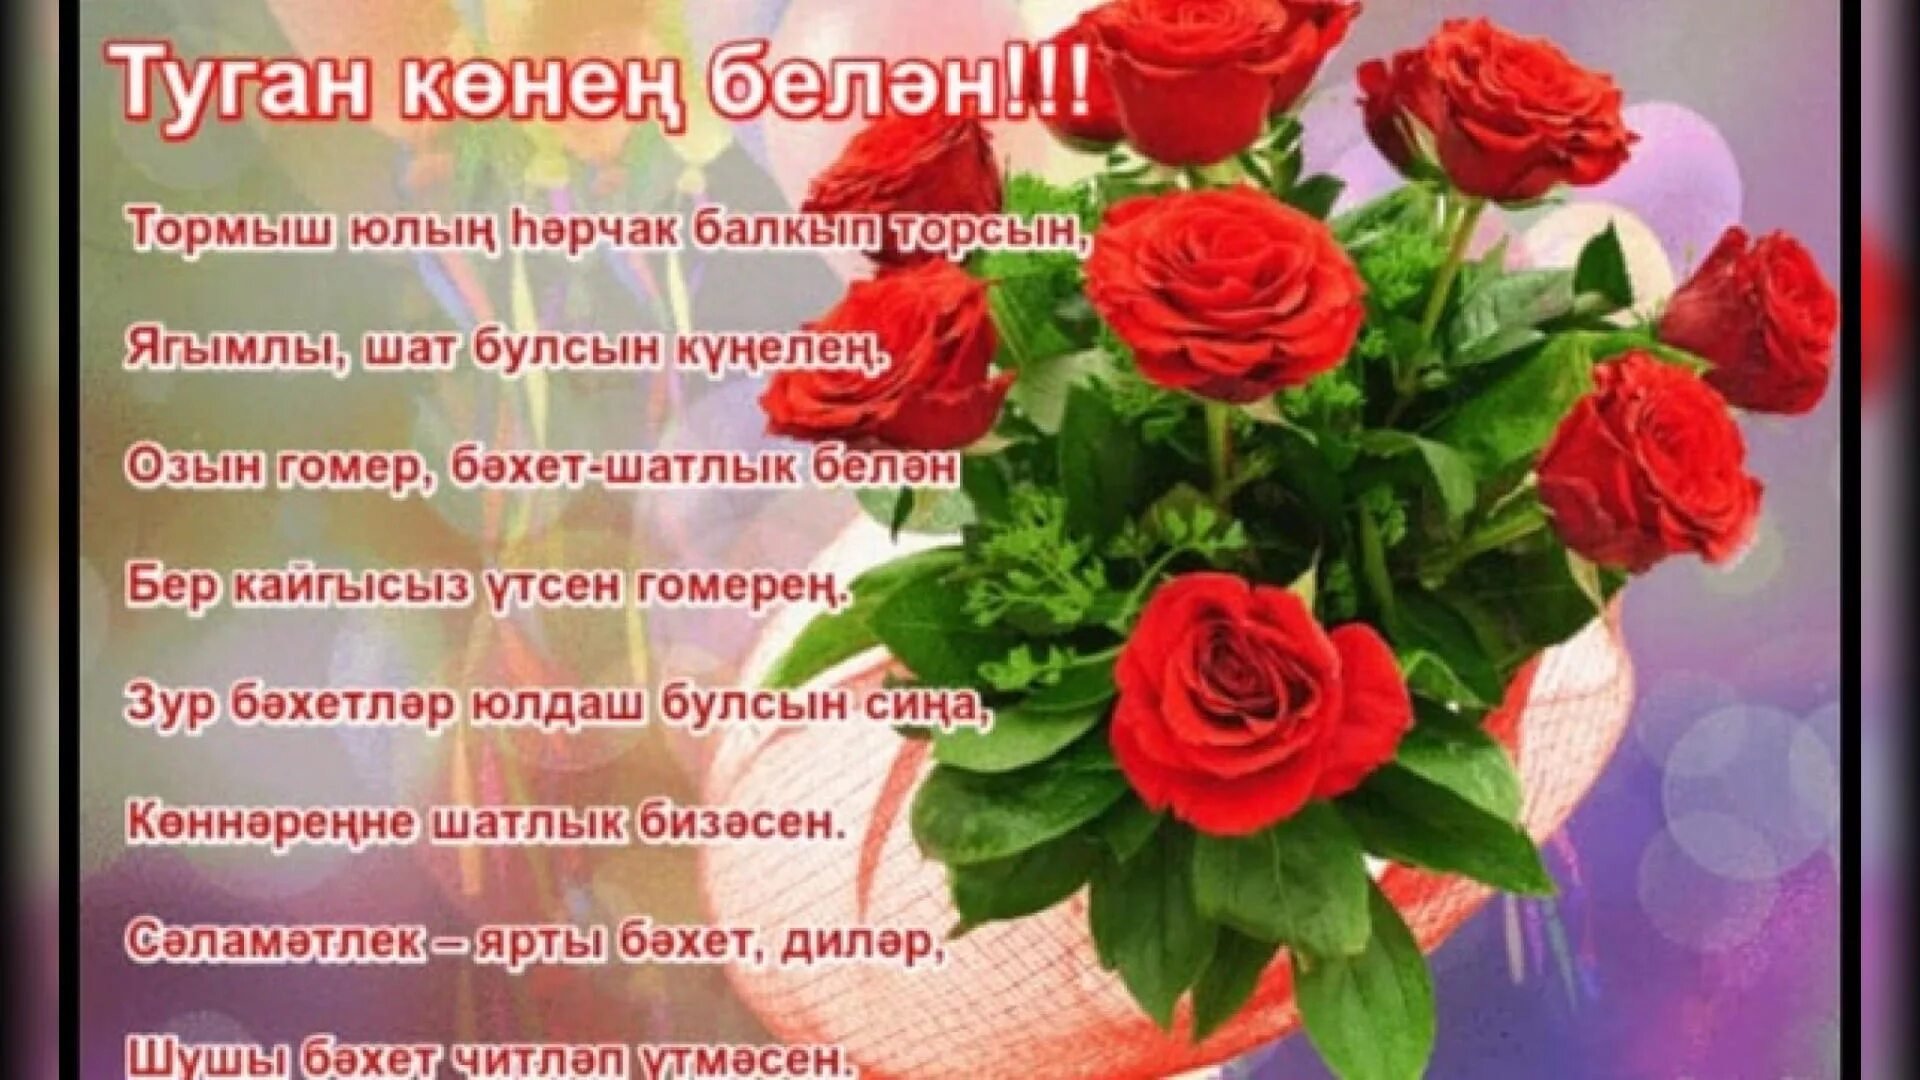 Впечатляющие png и jpg картинки на татарском языке для С Днем матери